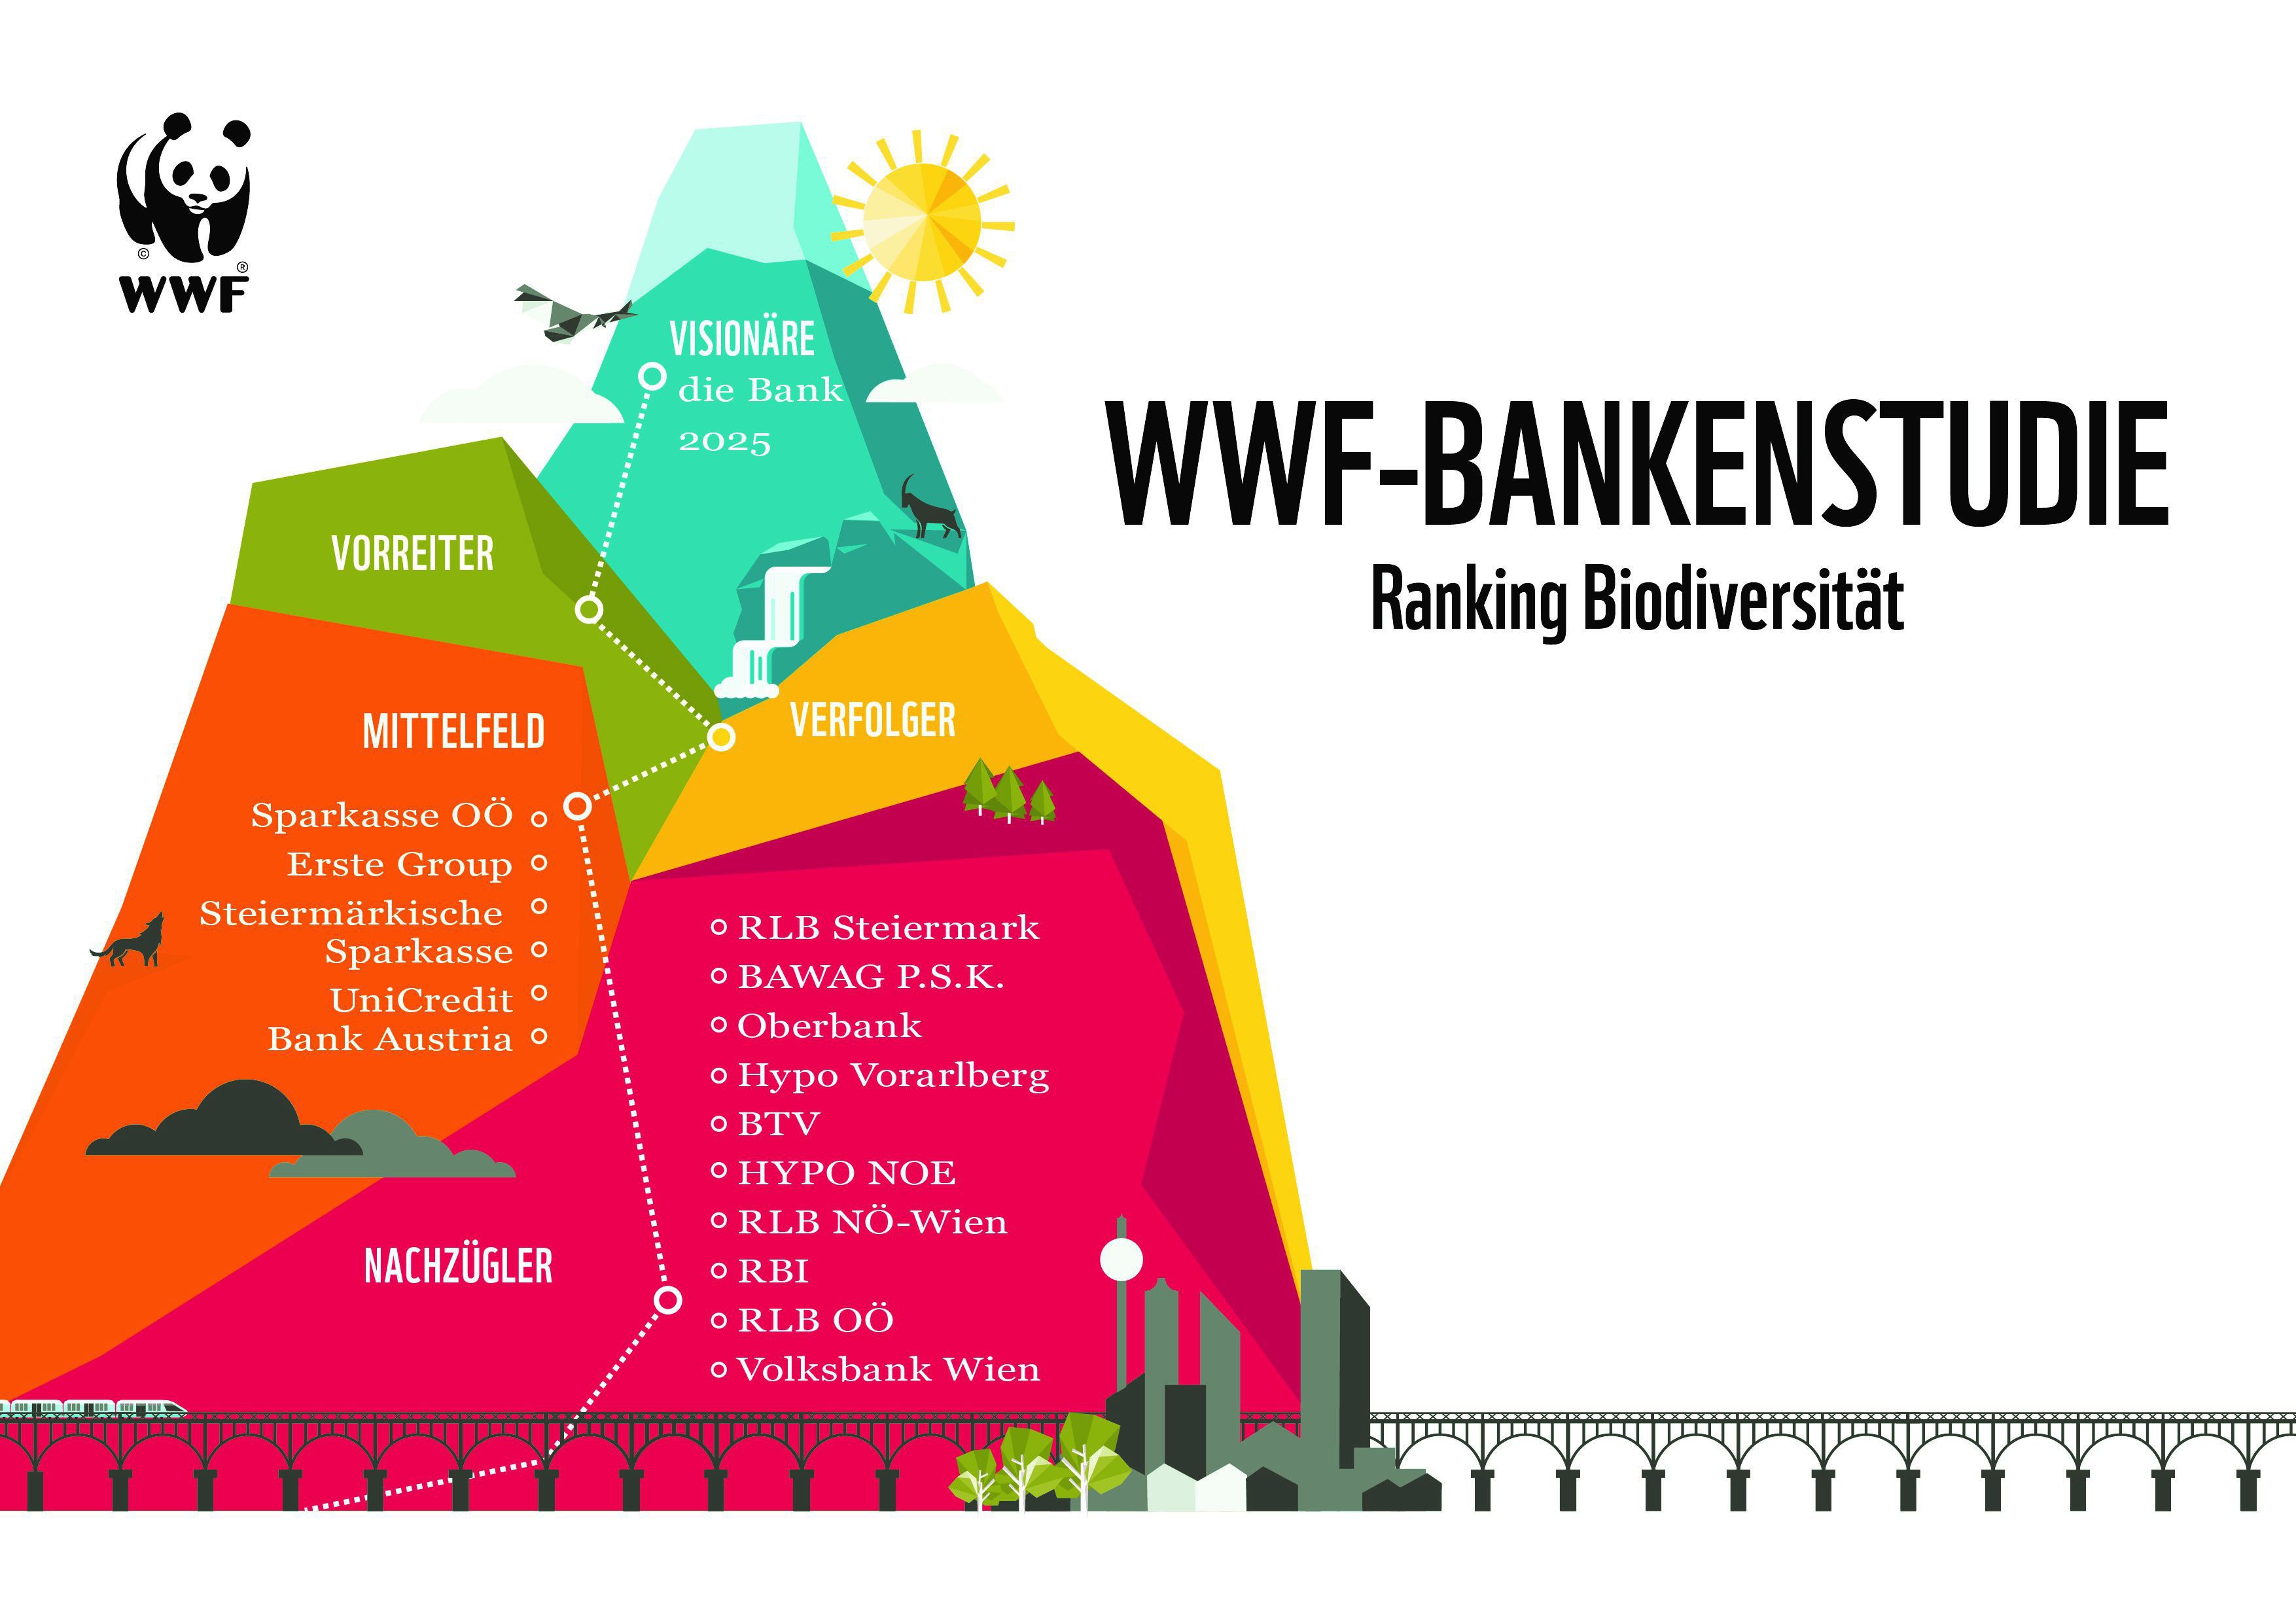 Eine bunte Grafik zeigt, dass sich die heimischen Banken bezüglich Biodiversität nur im Mittelfeld bzw. unter den Nachzüglern finden. Die ersten drei Kategorien bleiben unbesetzt.